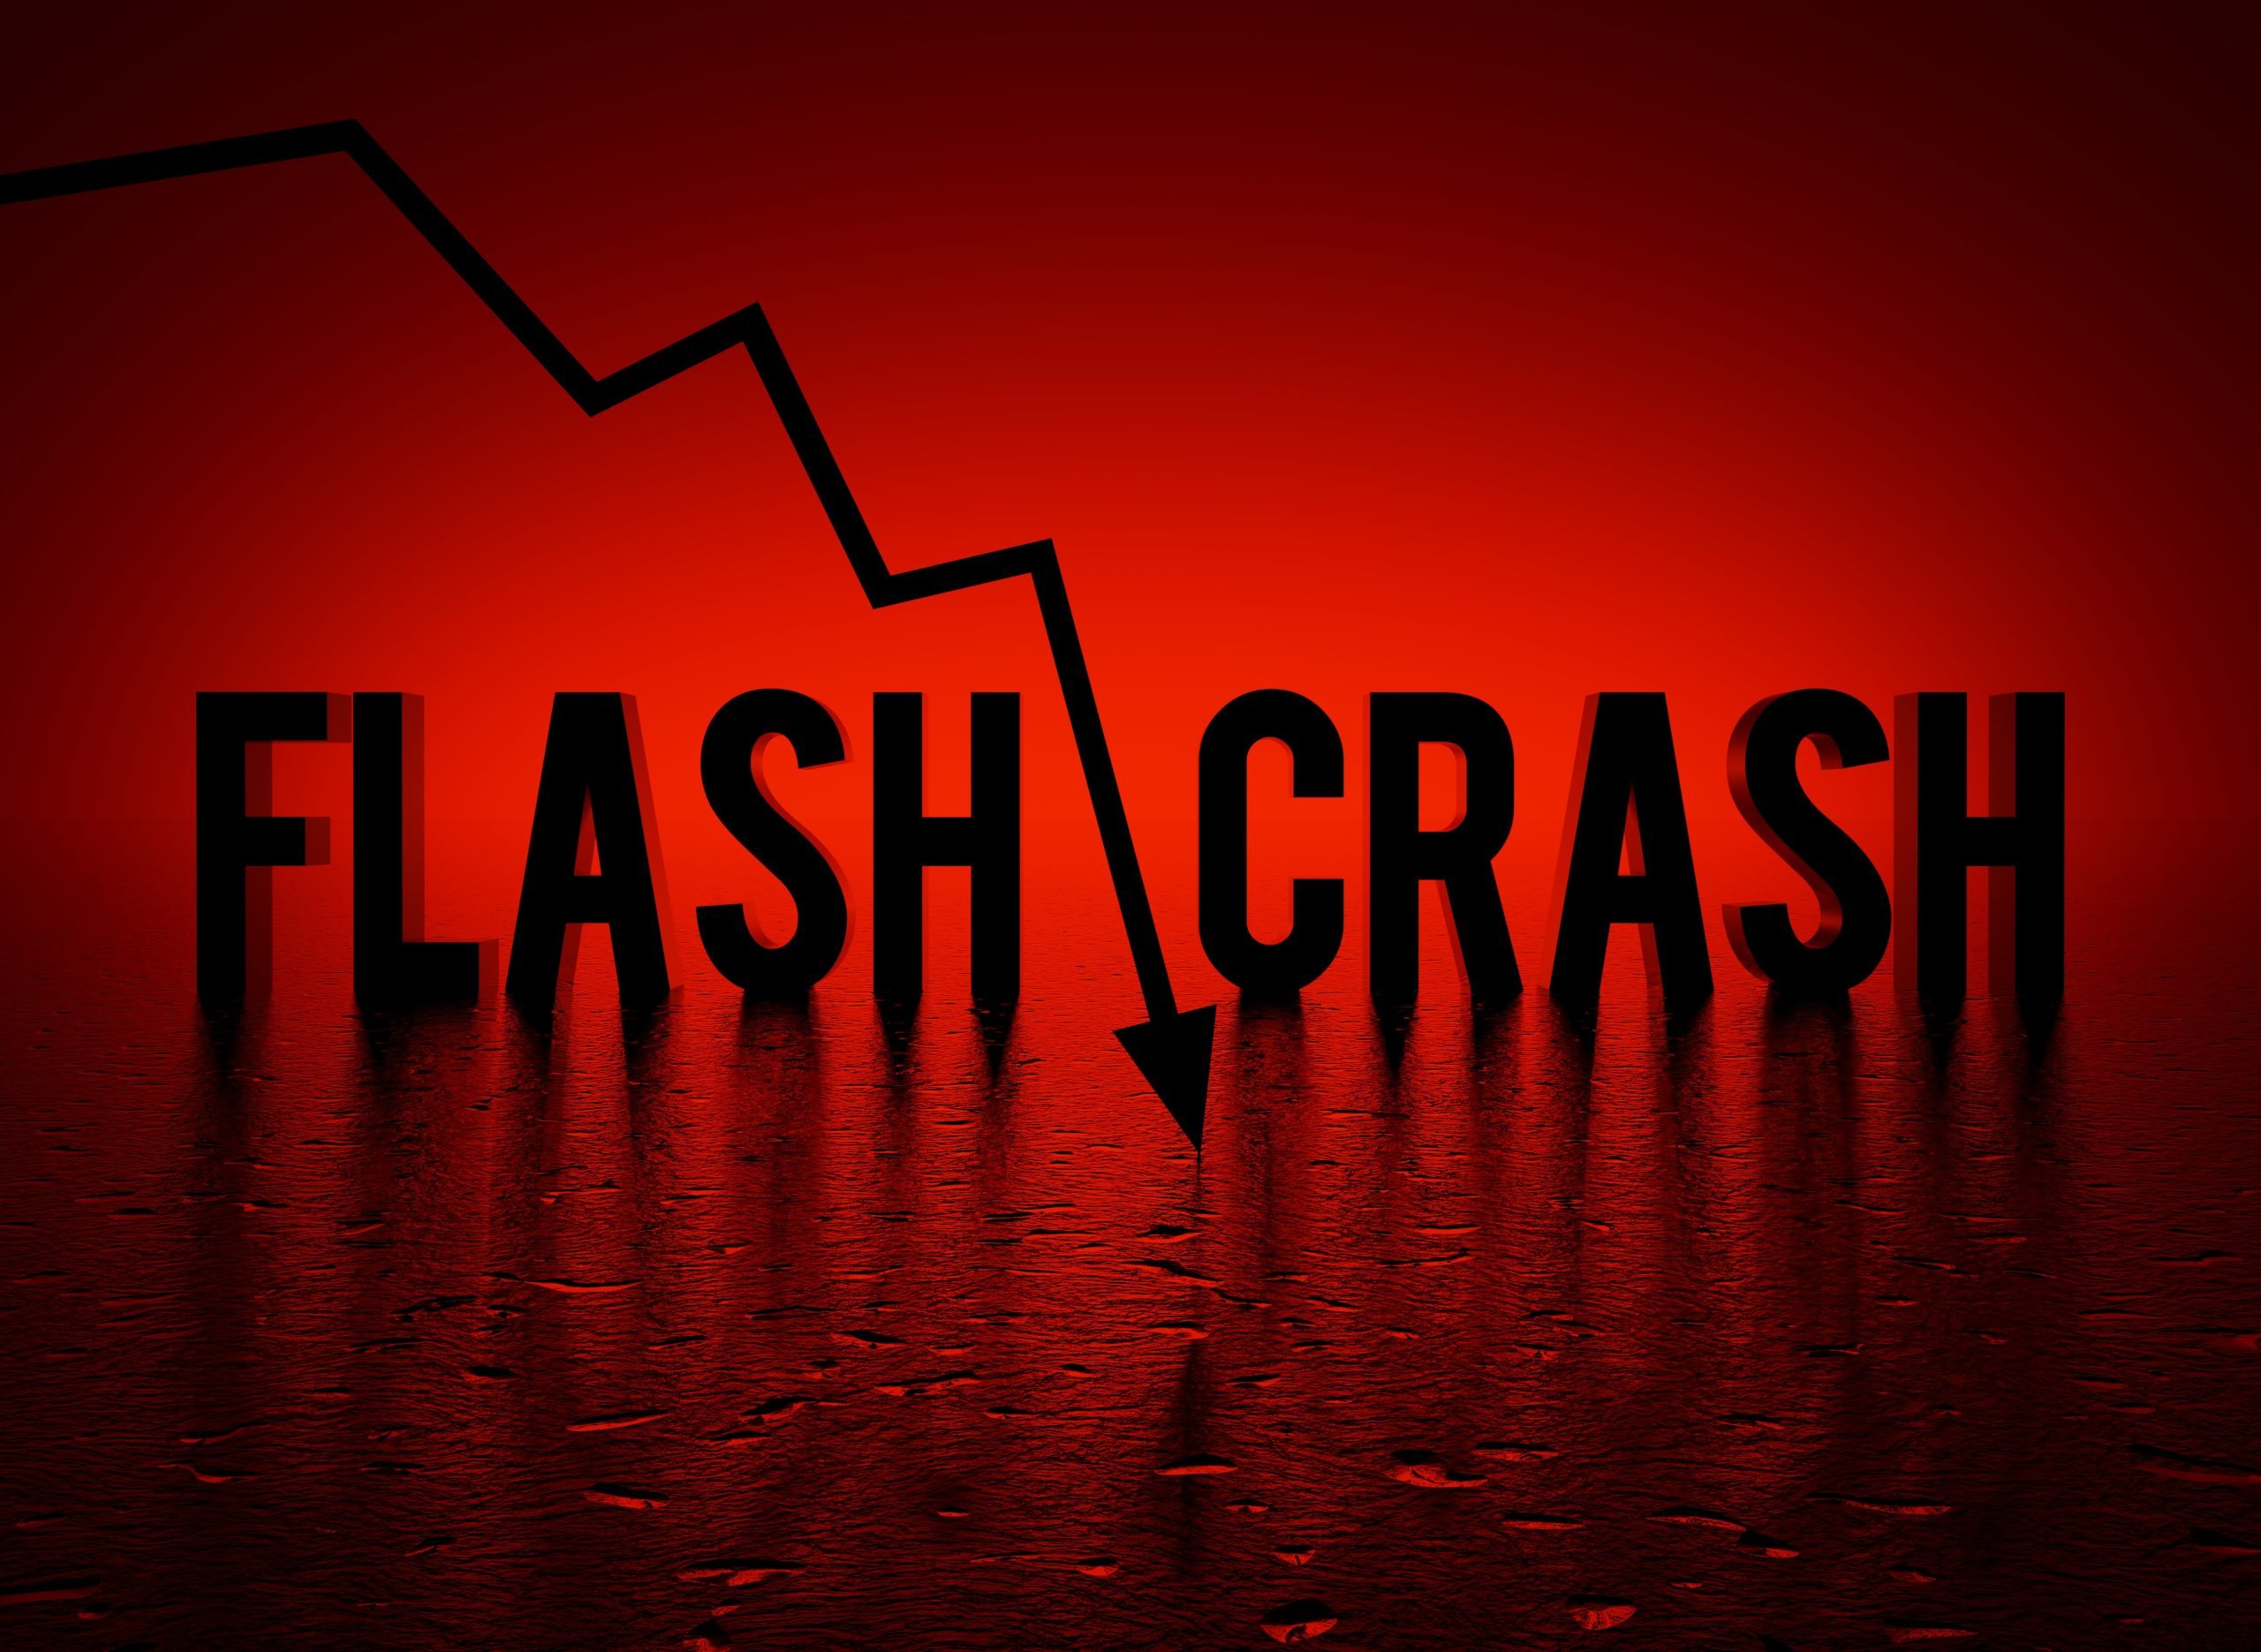 crypto flash crash